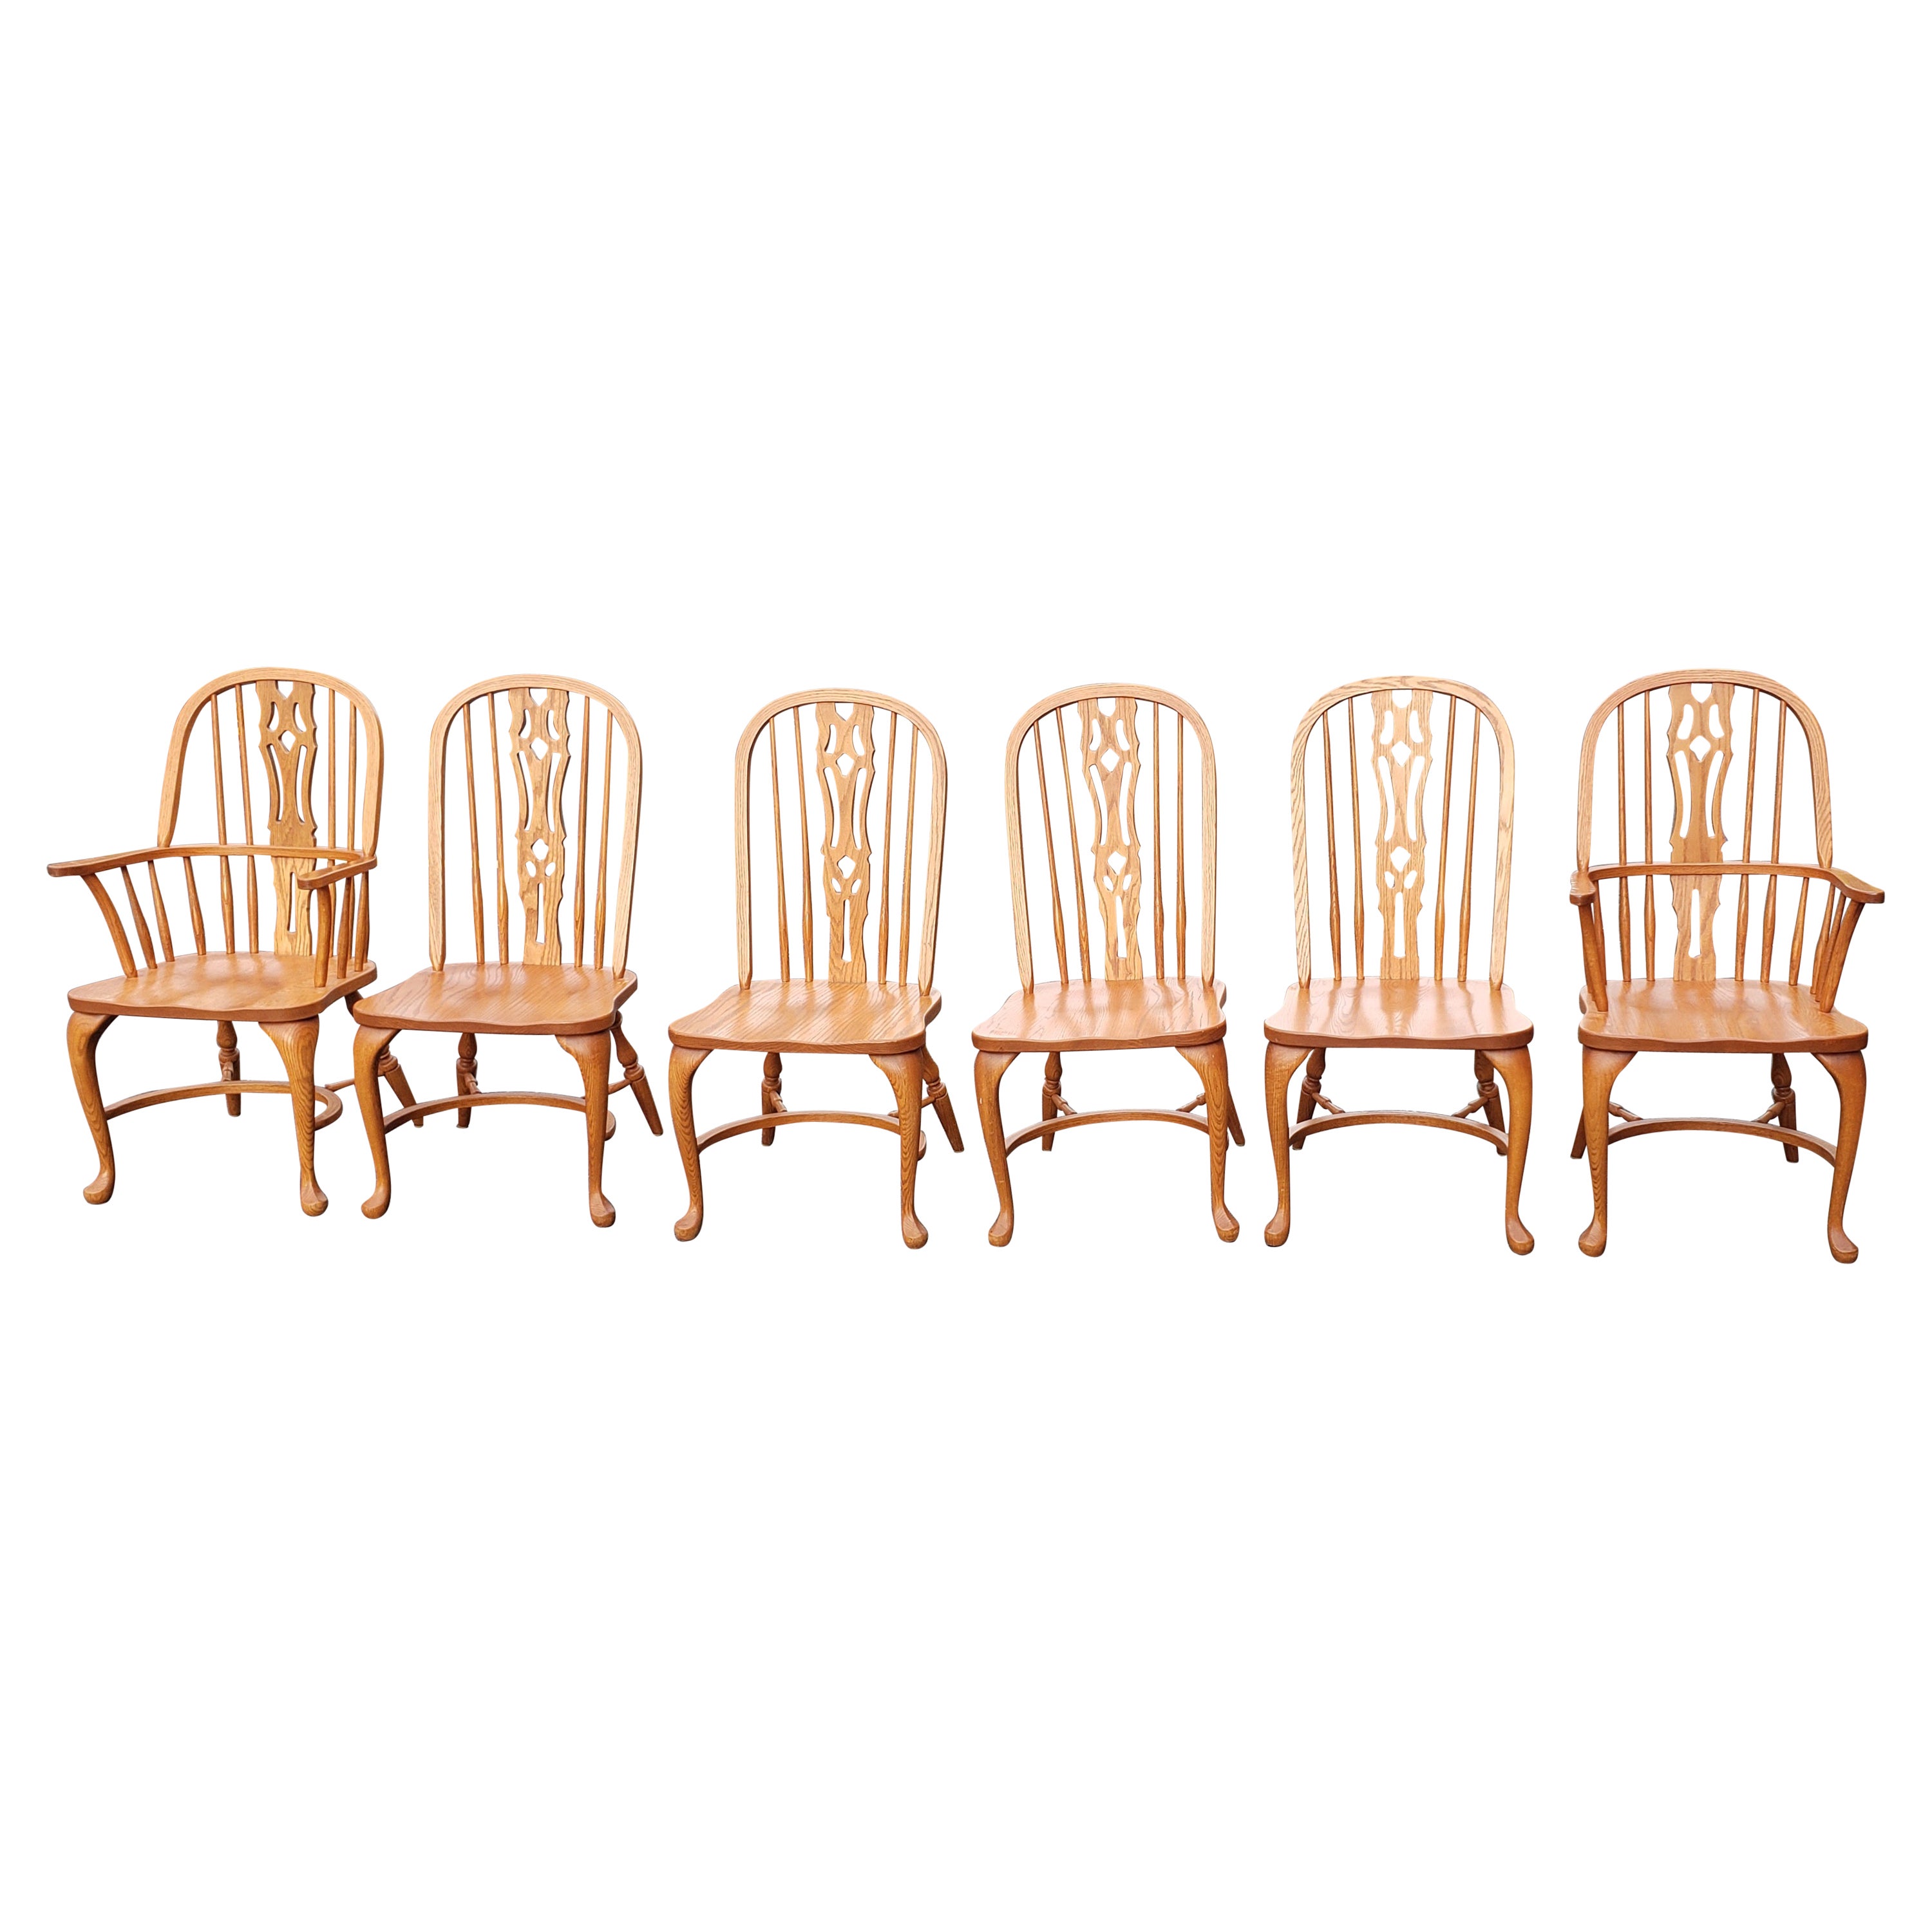 Satz von 6 Arts and Crafts Americana Windsor-Stühlen aus massivem Eichenholz